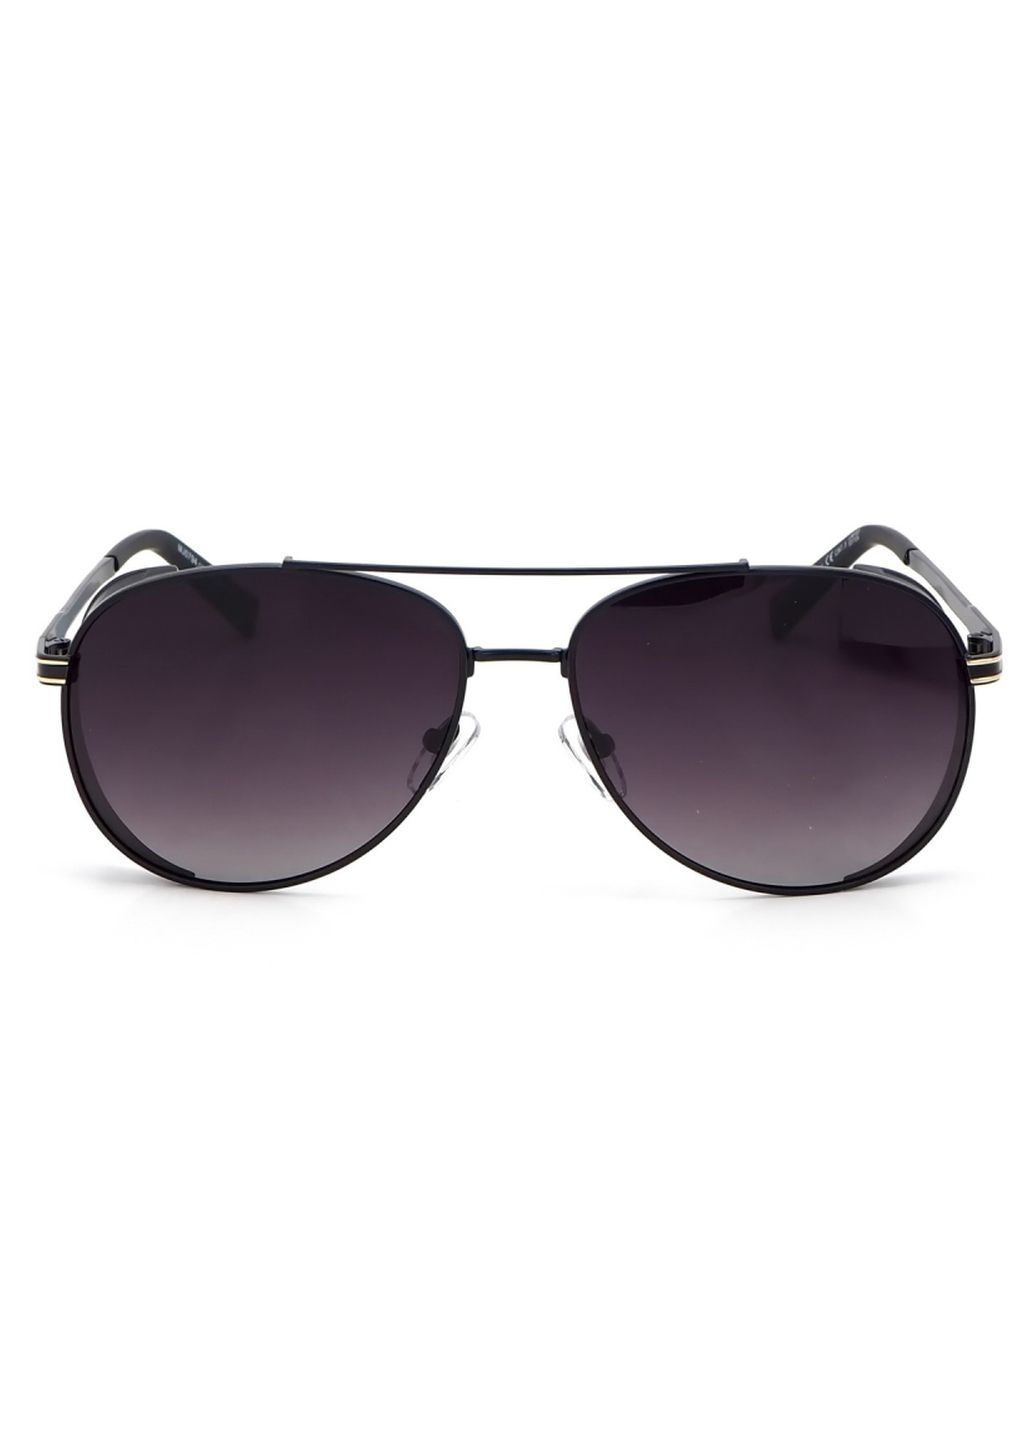 Купить Мужские солнцезащитные очки Marc John с поляризацией MJ0794 190030 - Черный в интернет-магазине